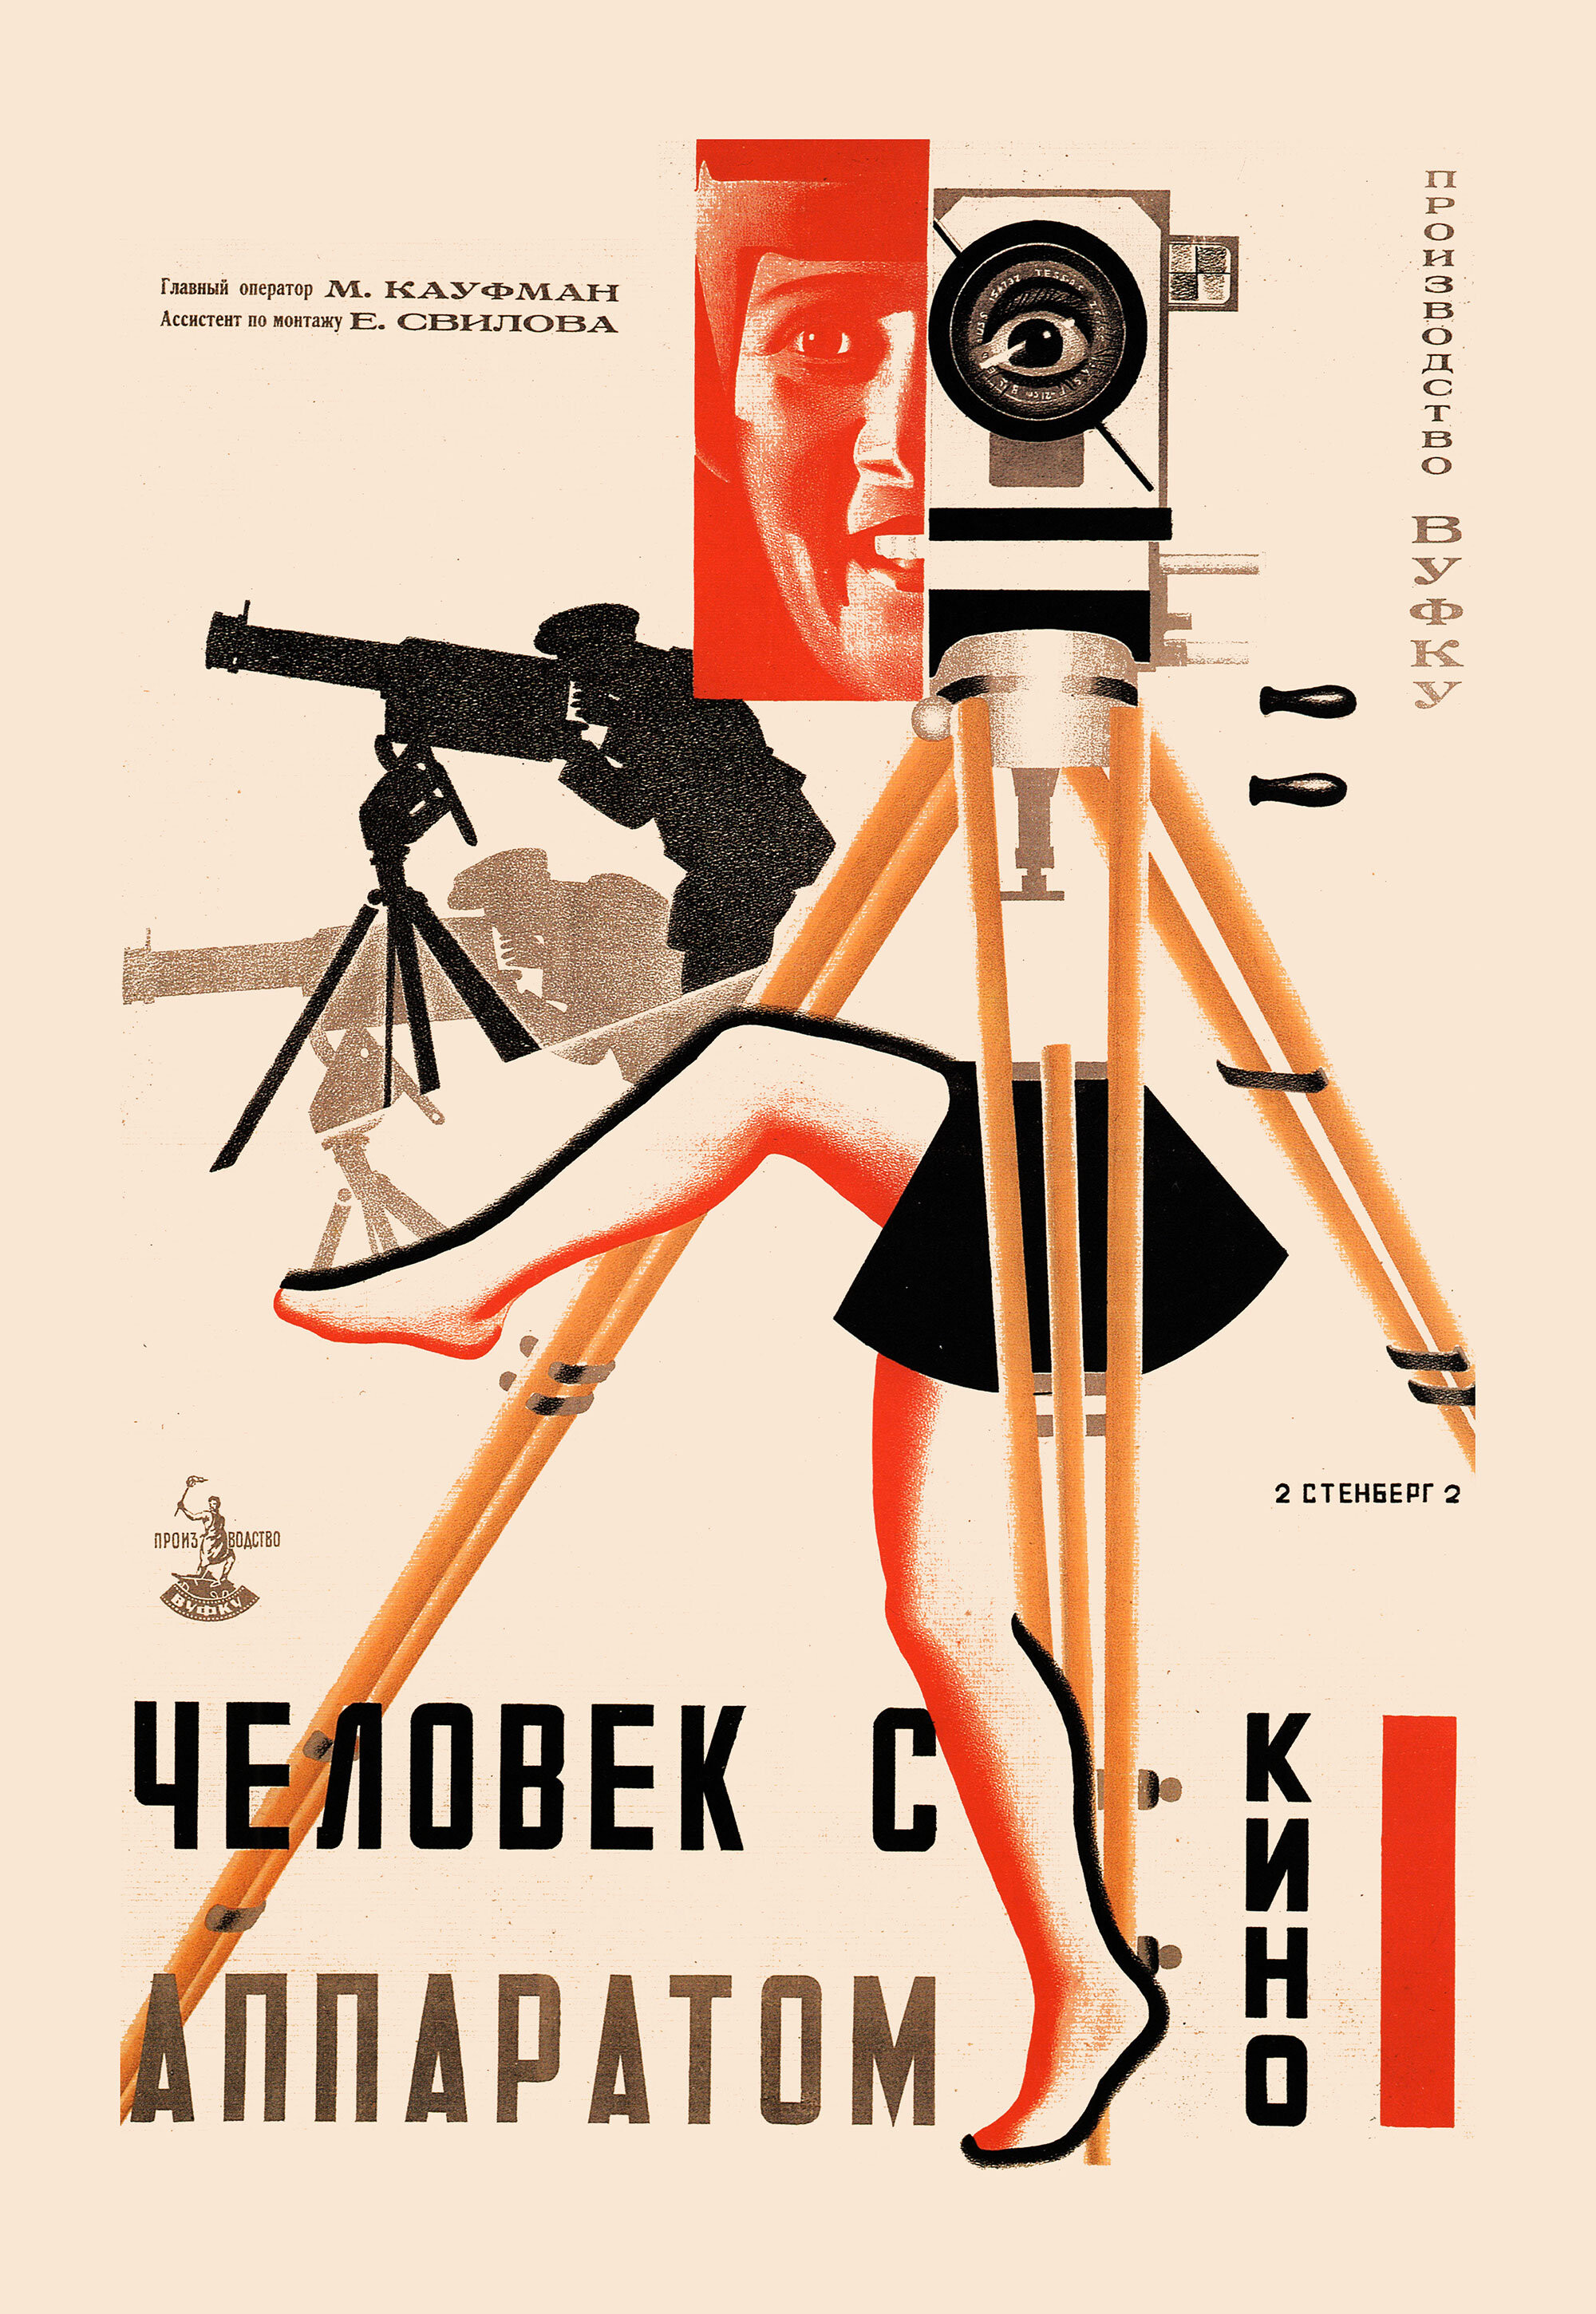 Человек с киноаппаратом, 1929 год, режиссёр Дзига Вертов, плакат к фильму, авторы Георгий и Владимир Стенберги (авангардное советское искусство, 1920-е)